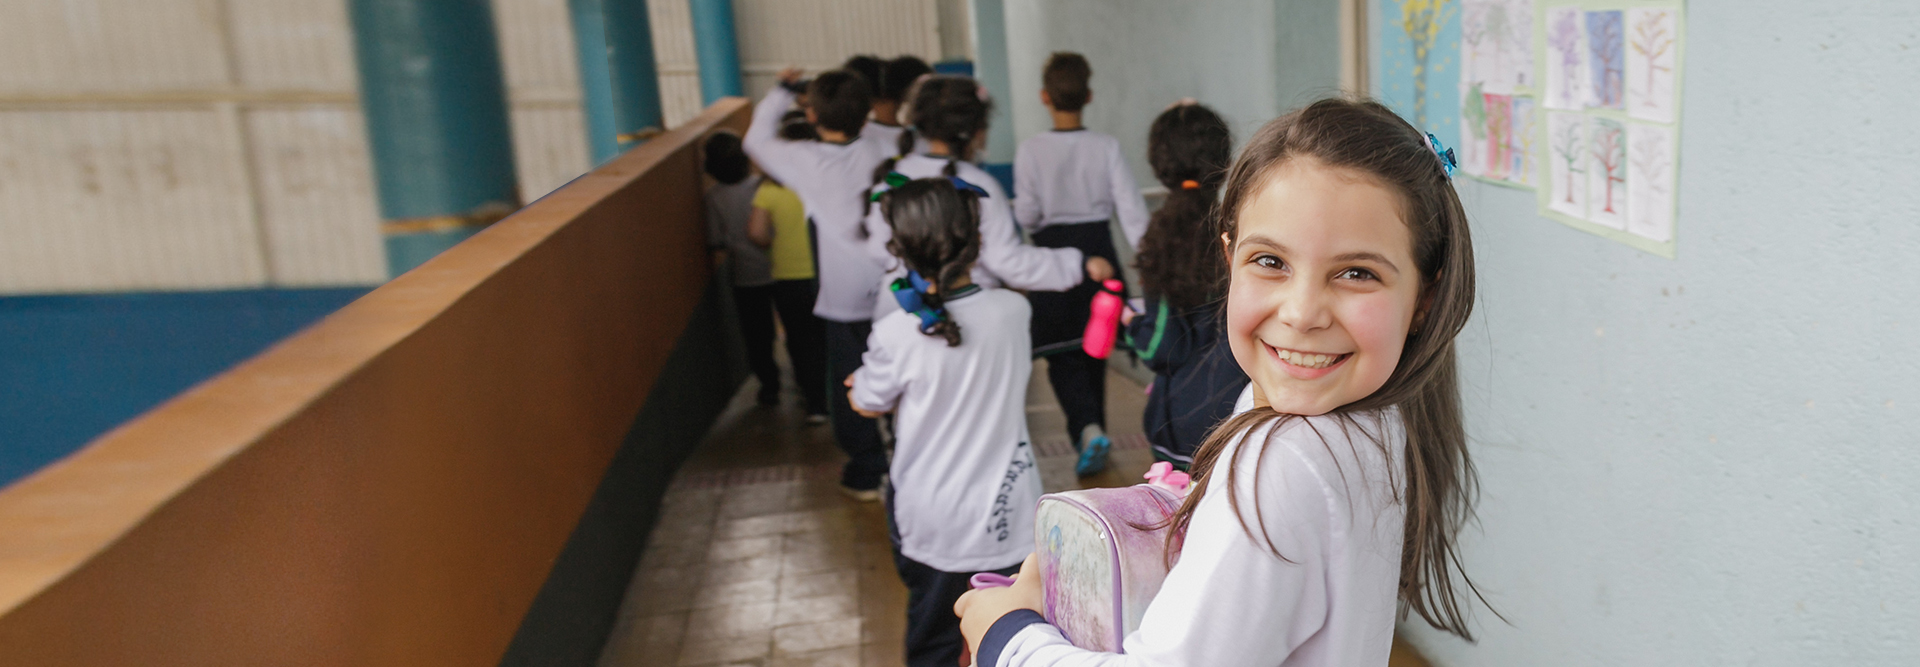 Um grupo de crianças em um corredor com a foto de uma menina, rodeadas de Componentes Educacionais.